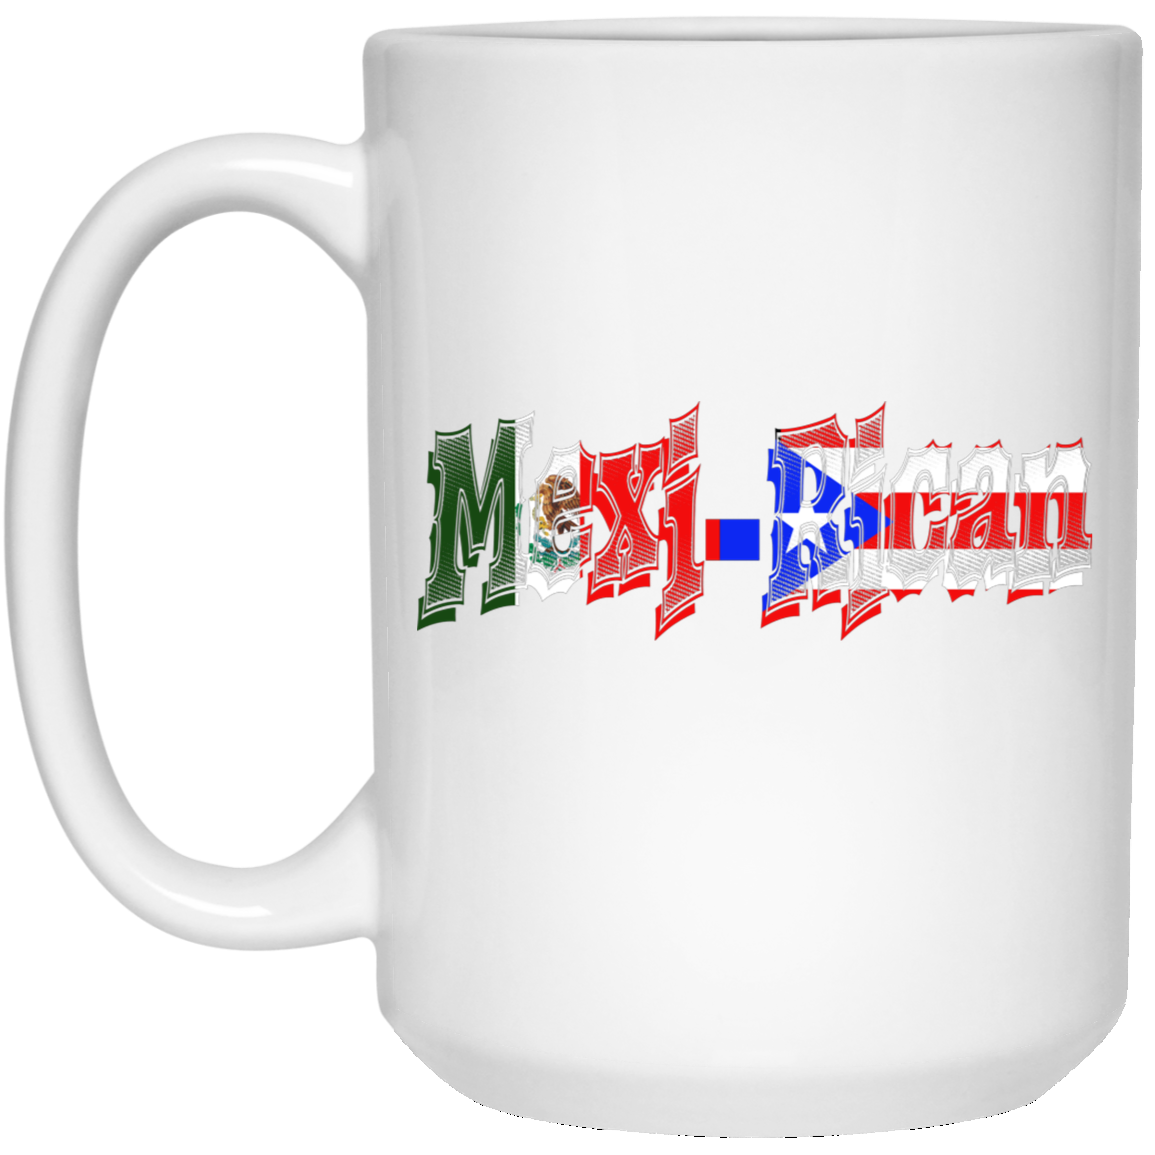 Mexi-Rican #1  15 oz. White Mug